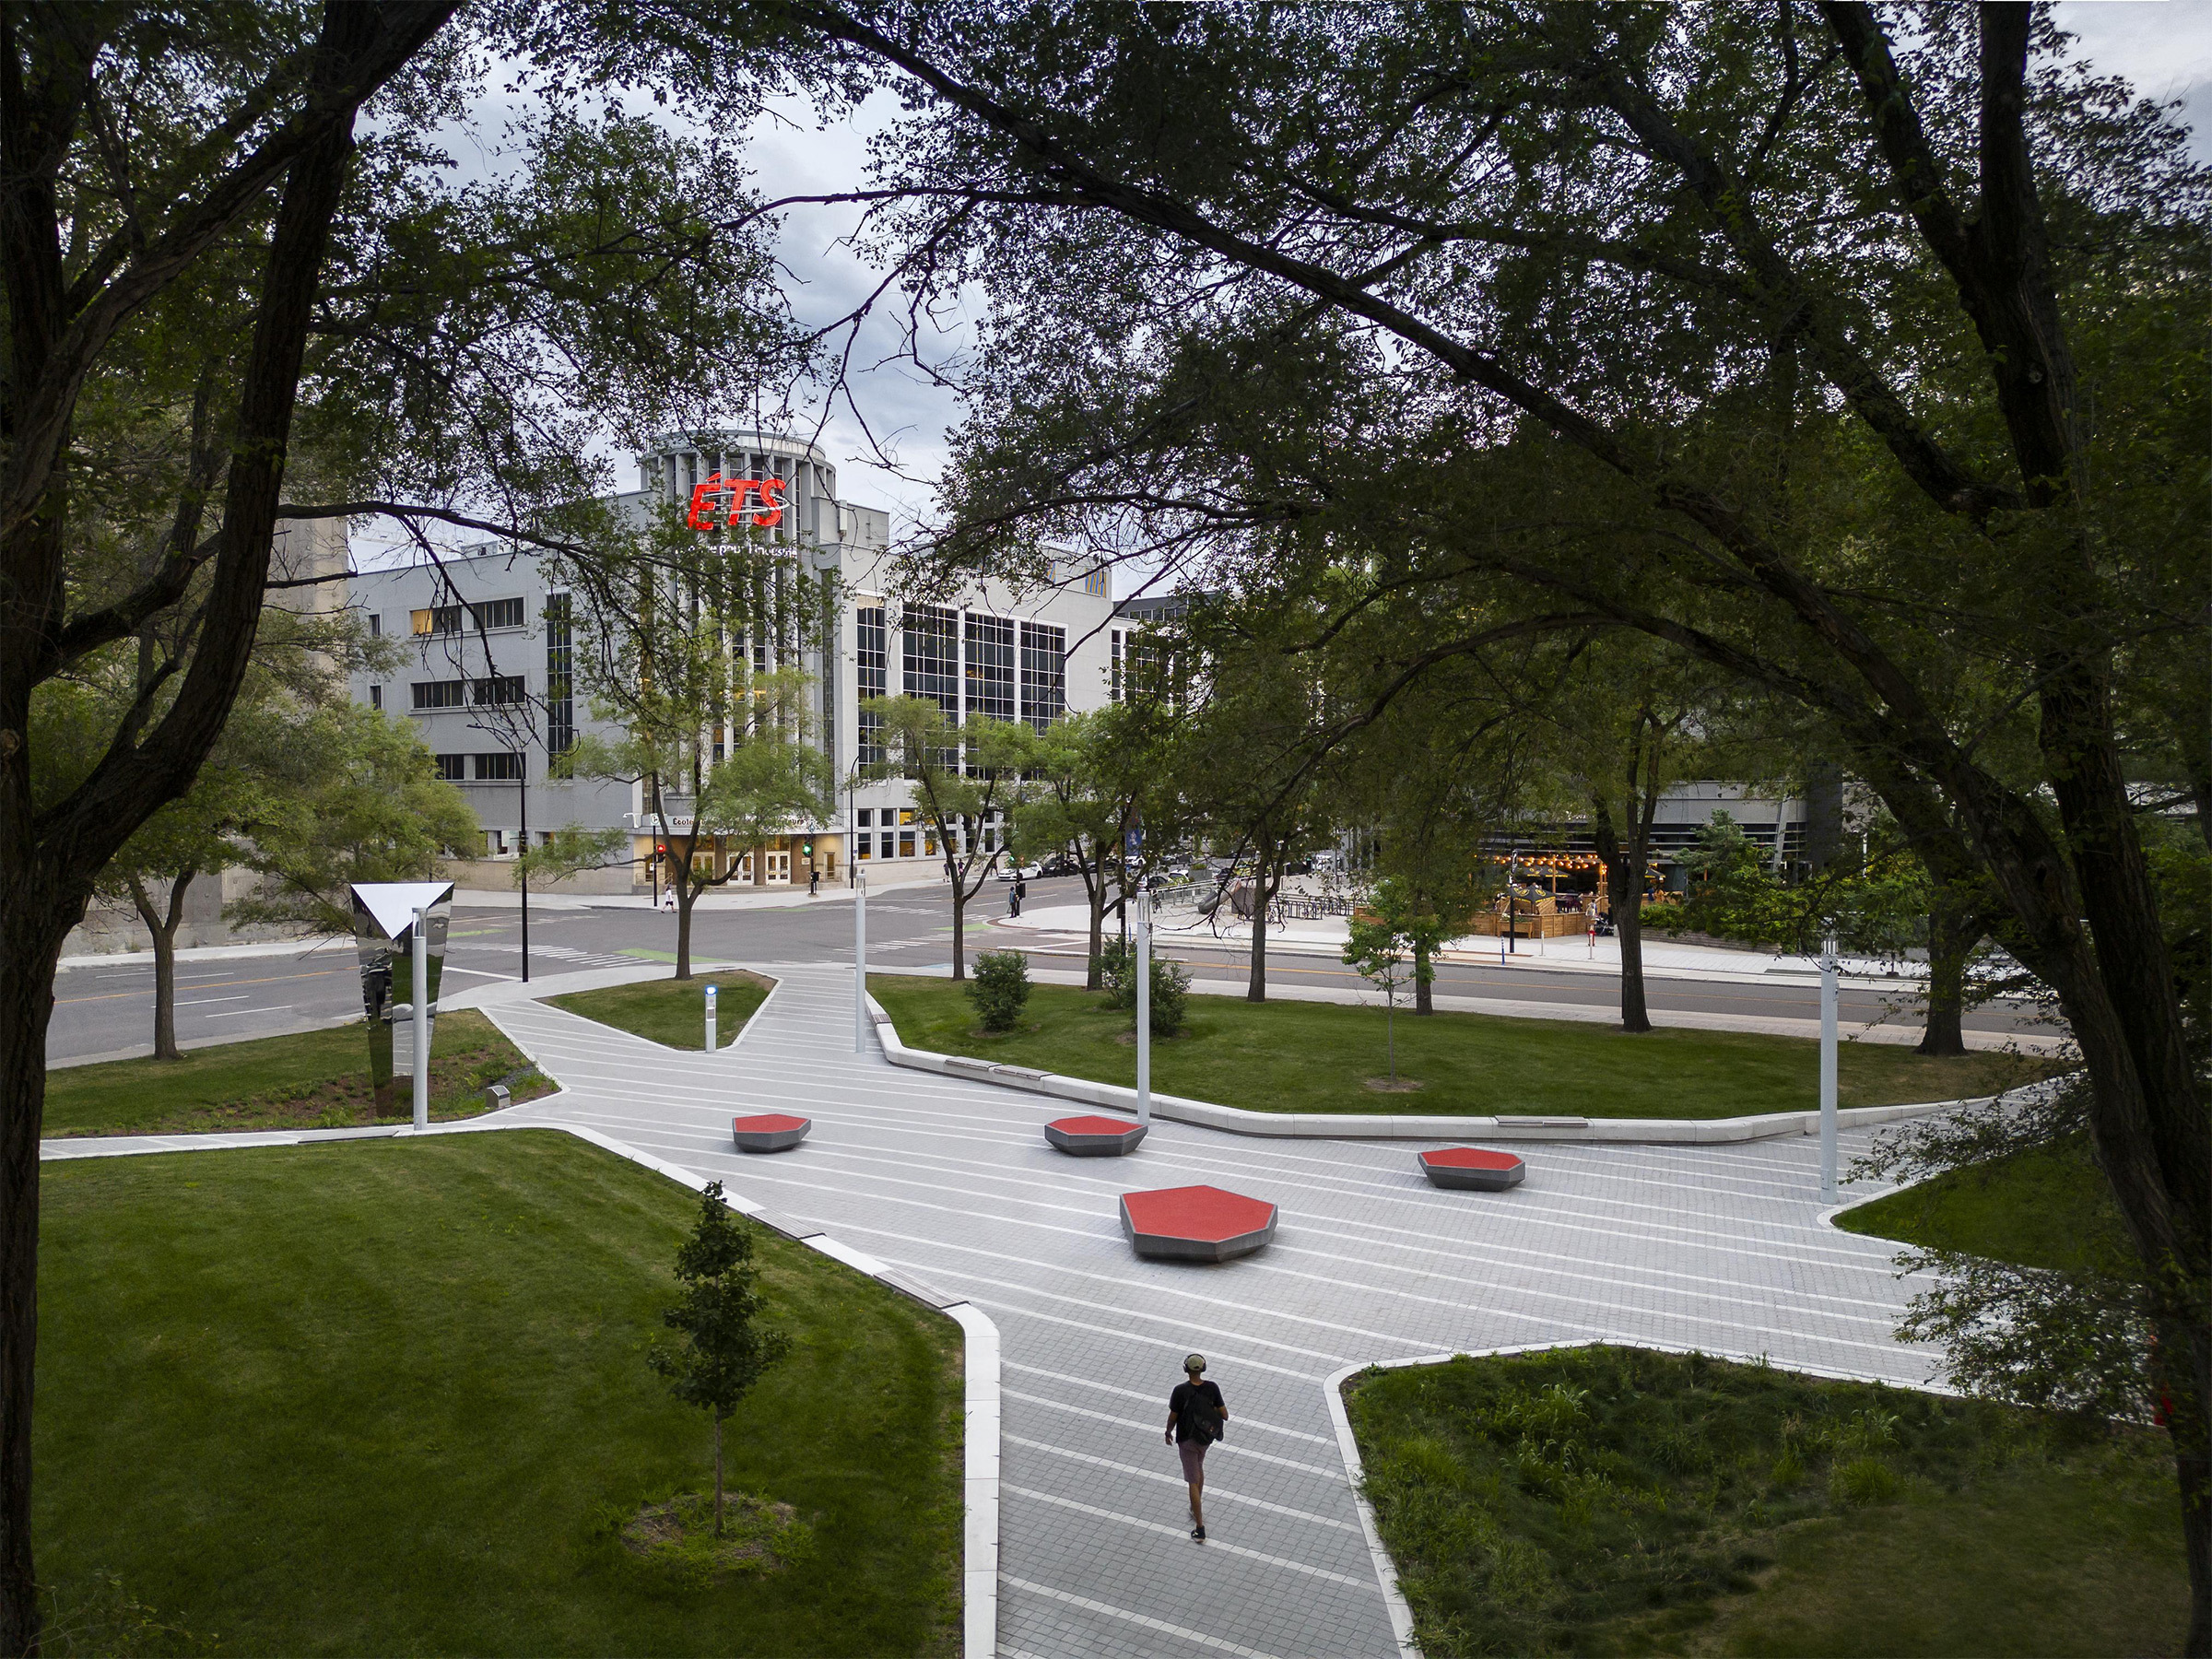 Campus verdoyant avec zones de repos, chemins pavés et bâtiment au logo rouge et blanc.